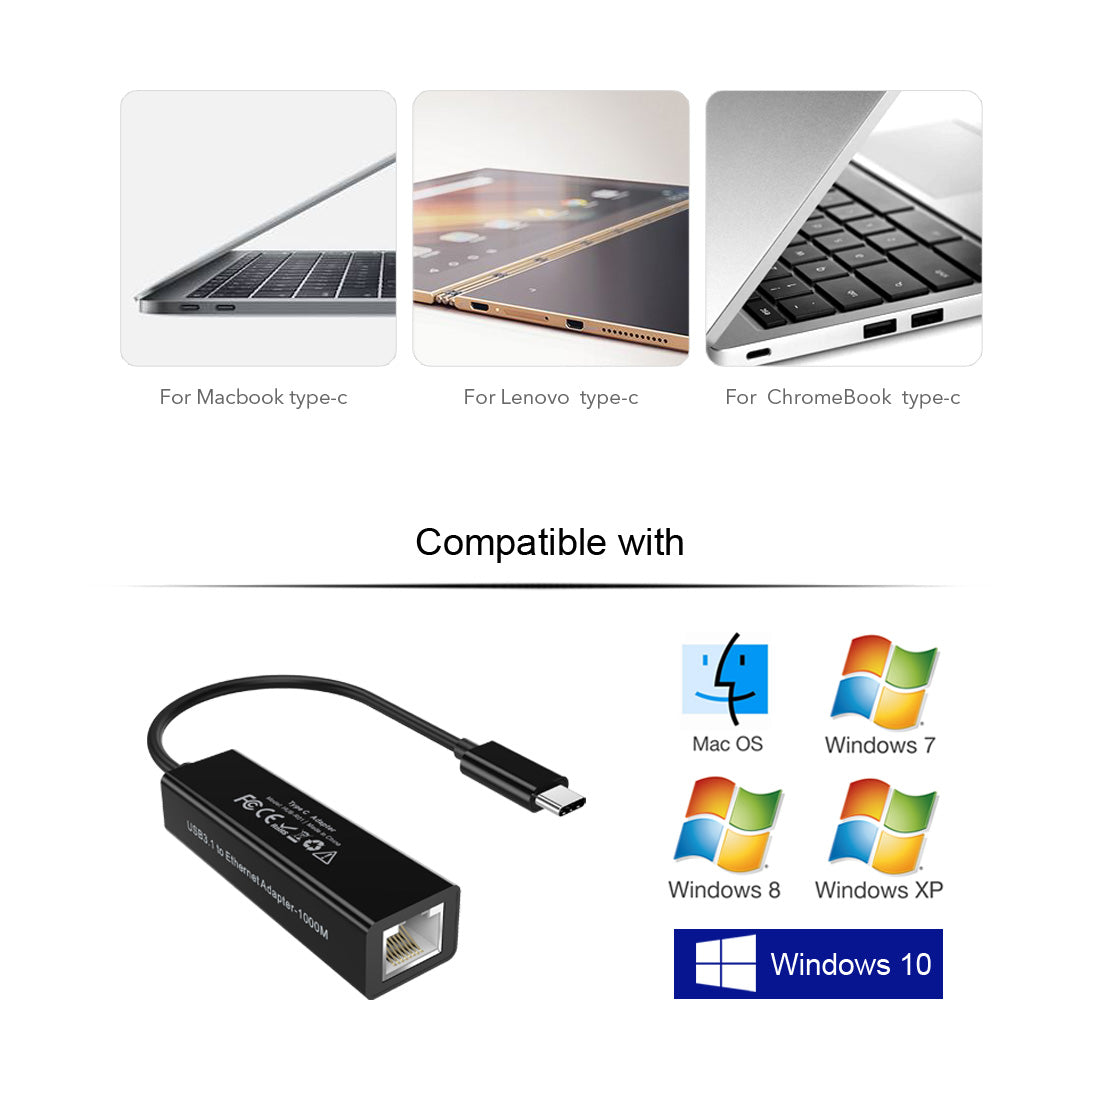 HUB-R01 Adaptateur USB C vers Ethernet, CHOETECH USB 3.1 Type C vers RJ-45 10/100/1000 Gigabit Ethernet LAN Adaptateur réseau pour iMac 2017, MacBook Pro 2017/2016, MacBook 2015, ChromeBook Pixel, etc.